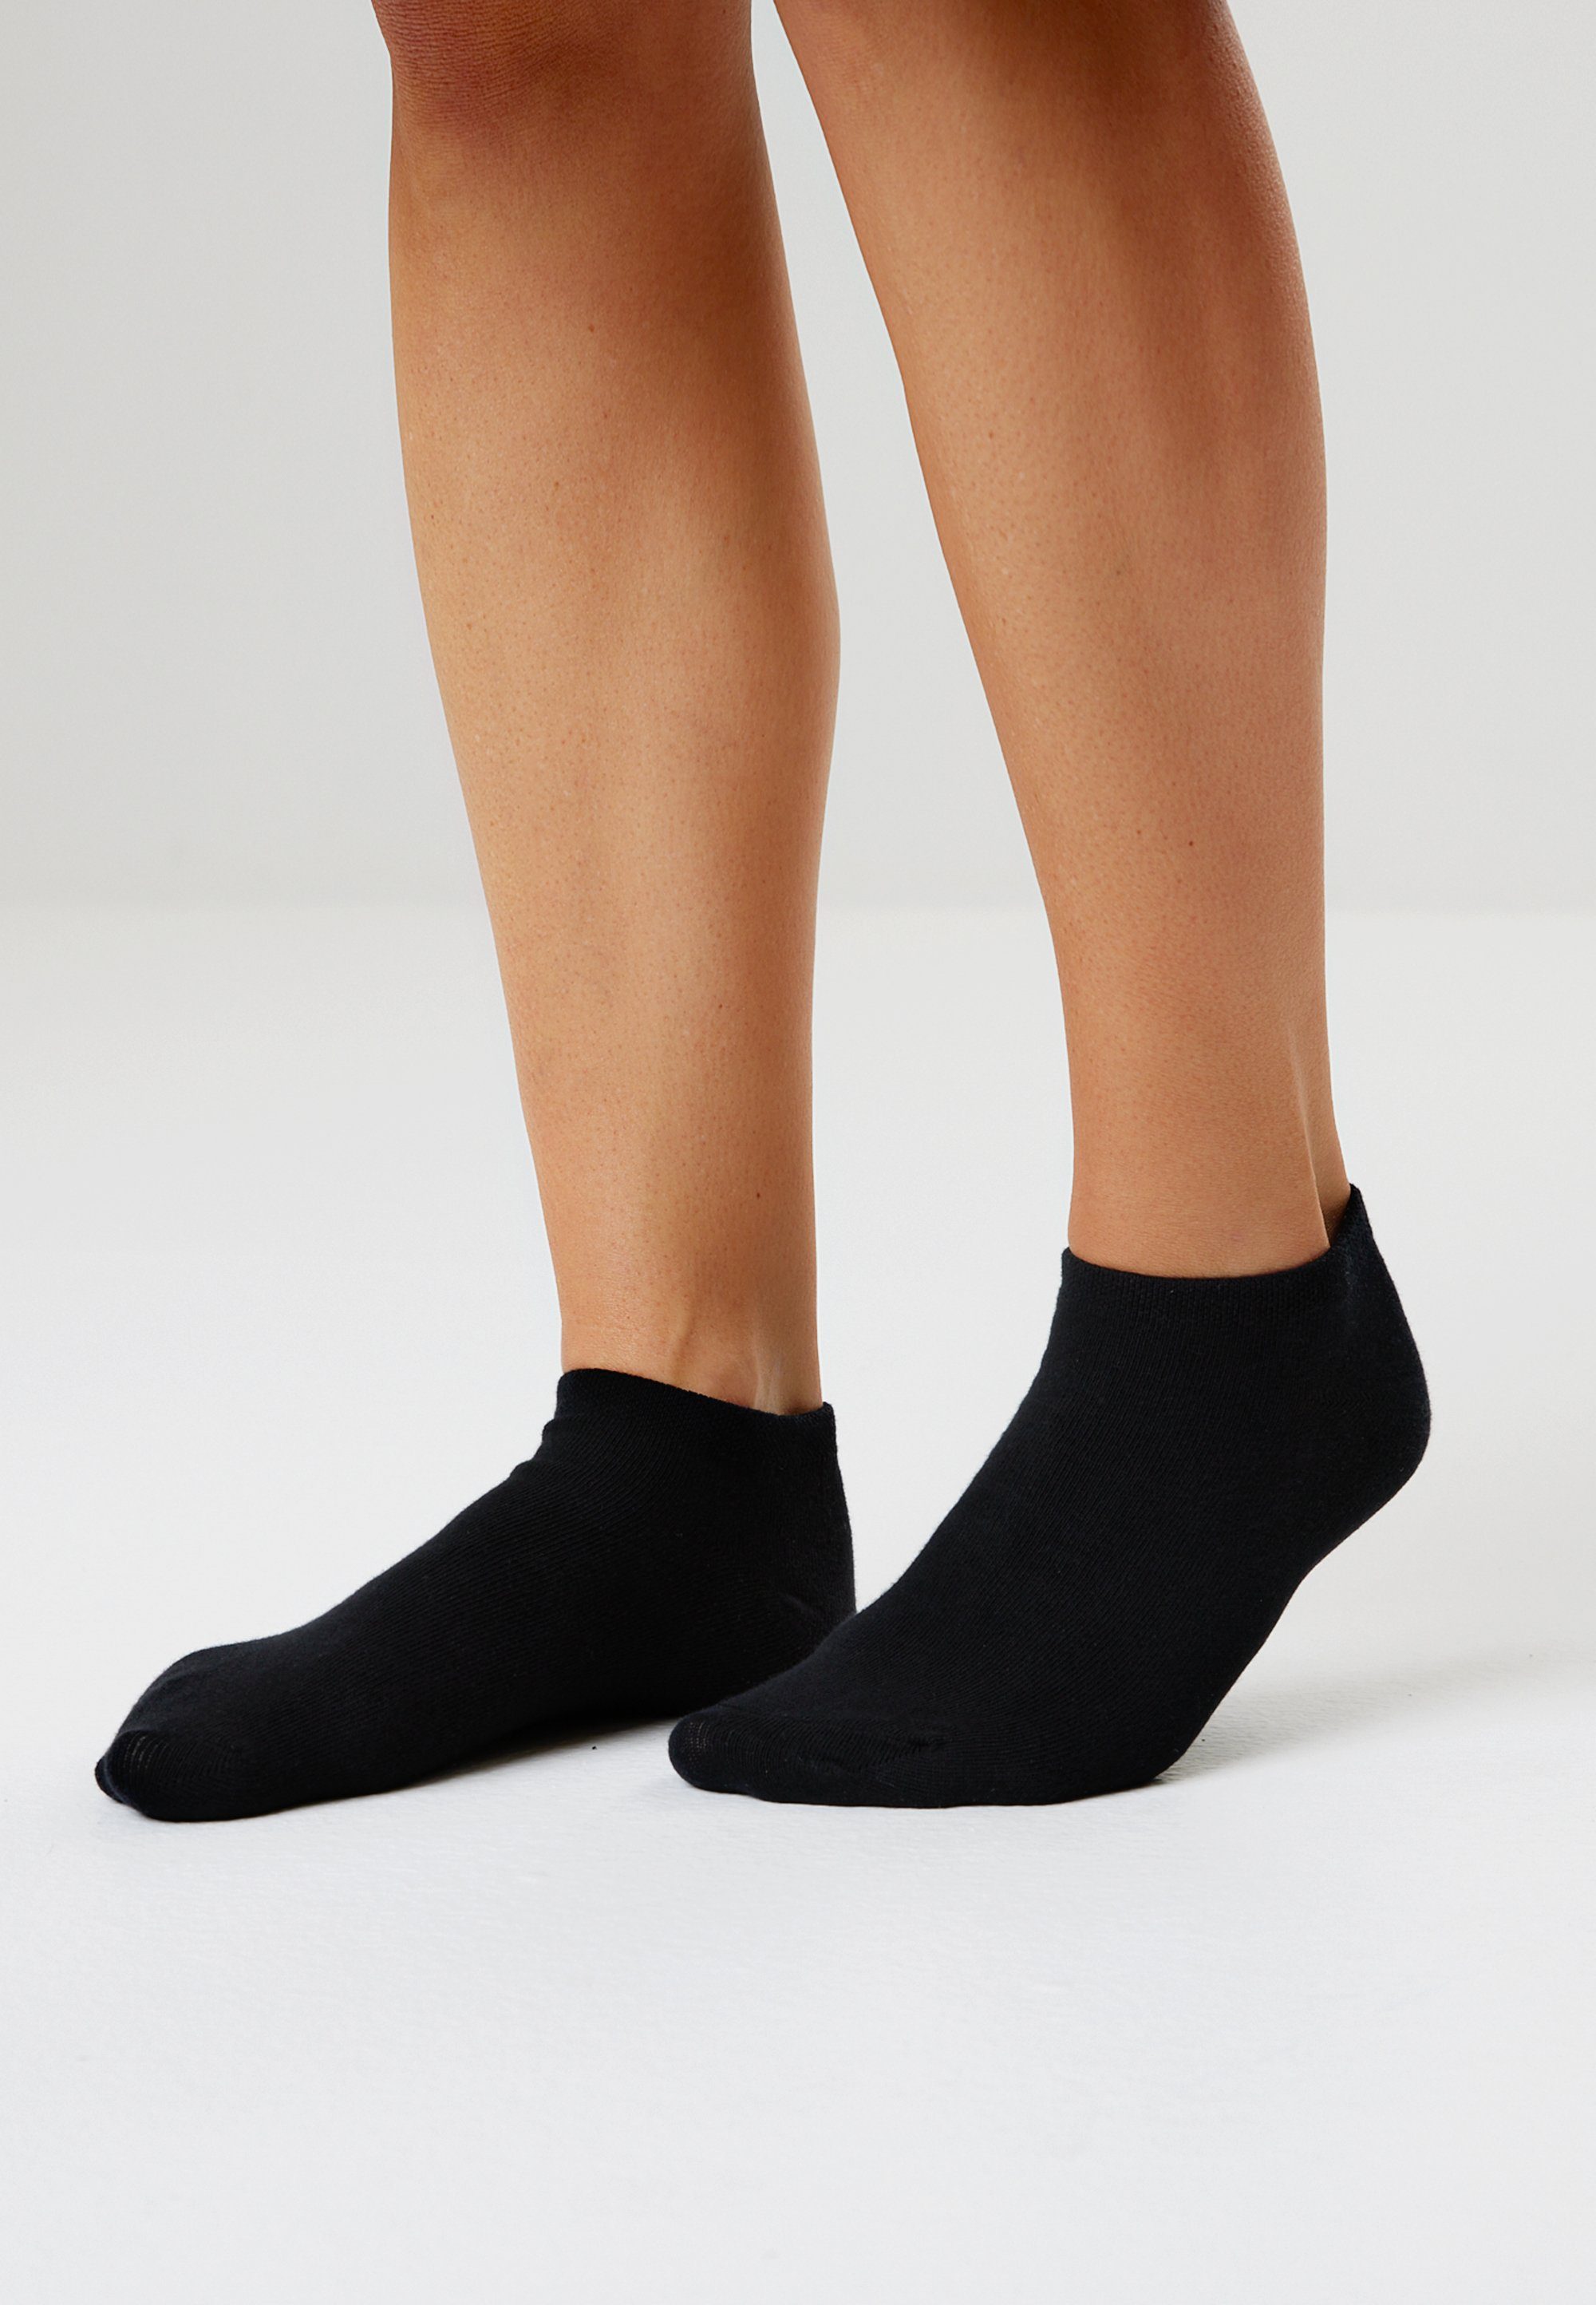 ENDURANCE Socken Mallorca in schwarz atmungsaktiver (8-Paar) Qualität